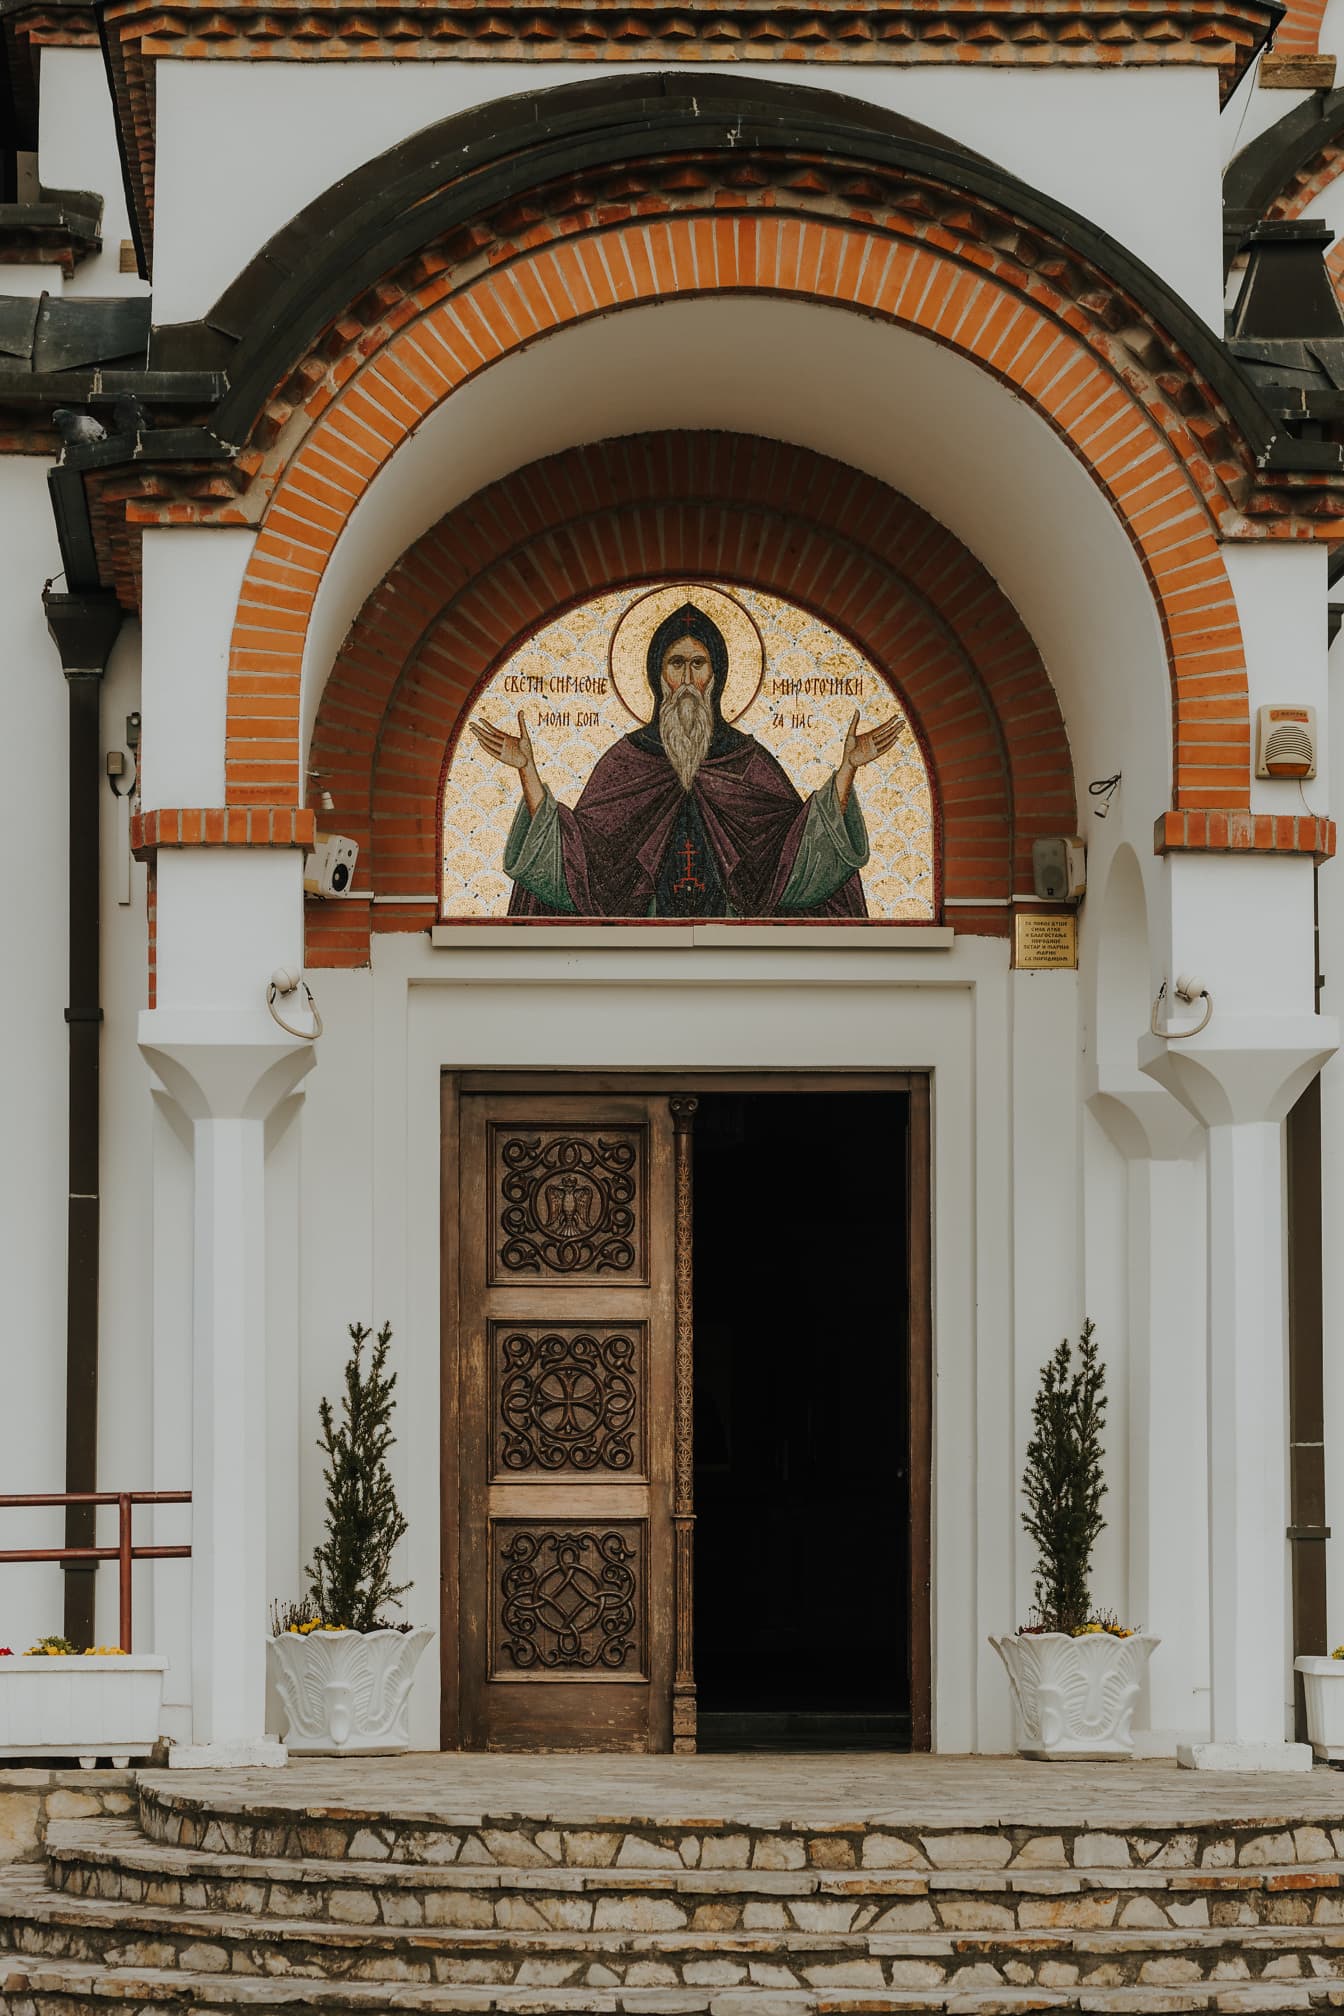 Ytterdörr av ortodox kyrka med mosaik av Sankt Simeon den fredlige